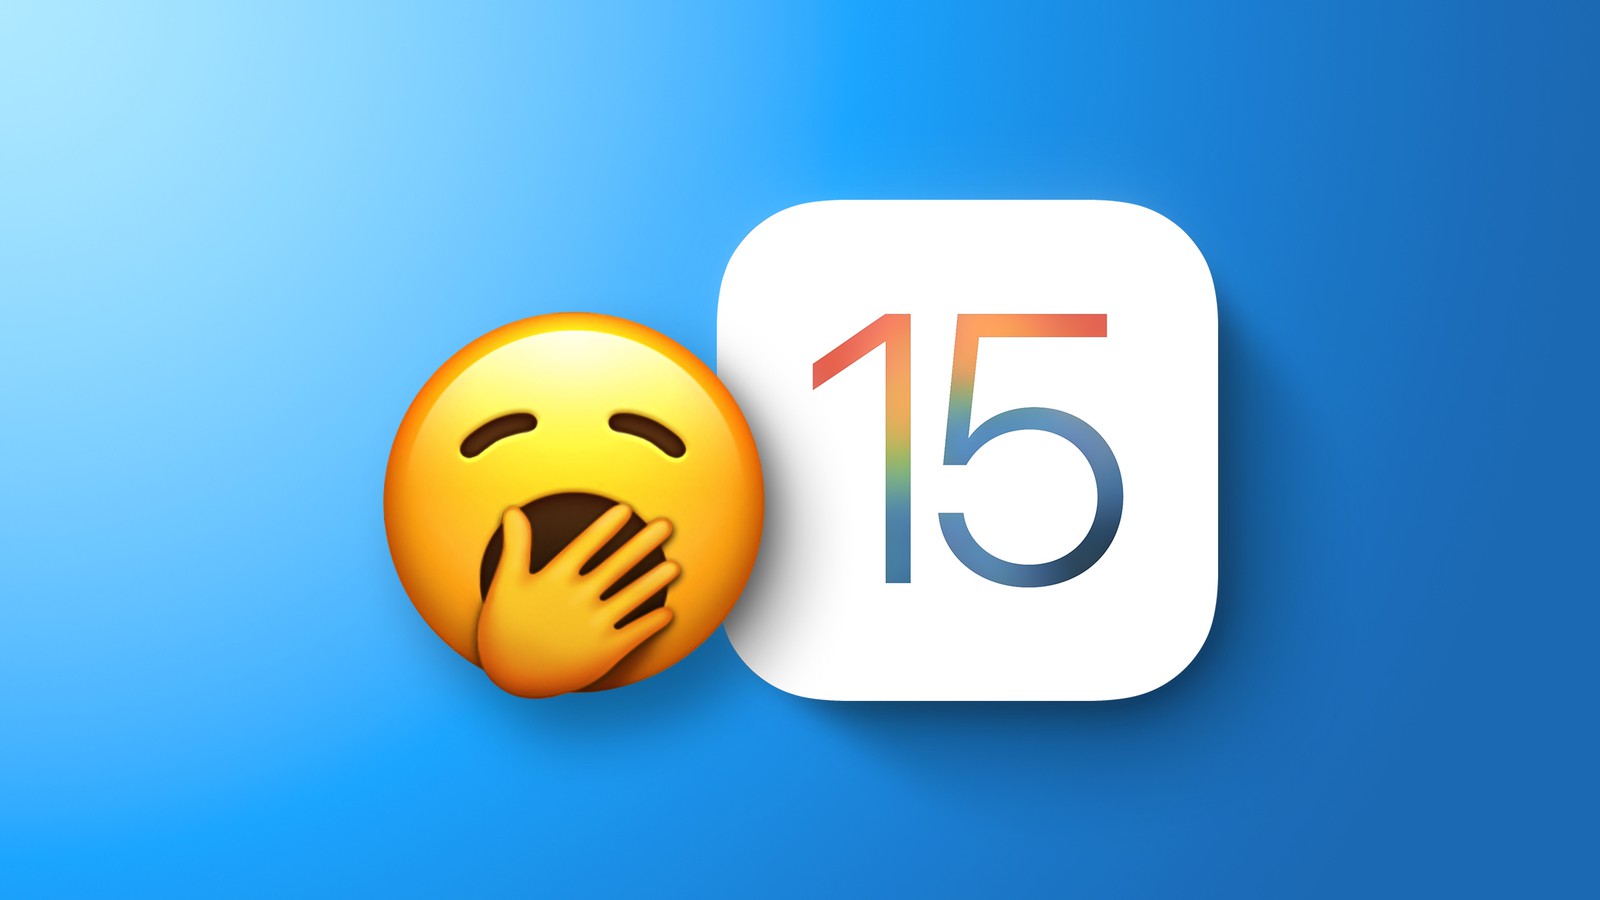 调查显示大部分用户对iOS15不感兴趣